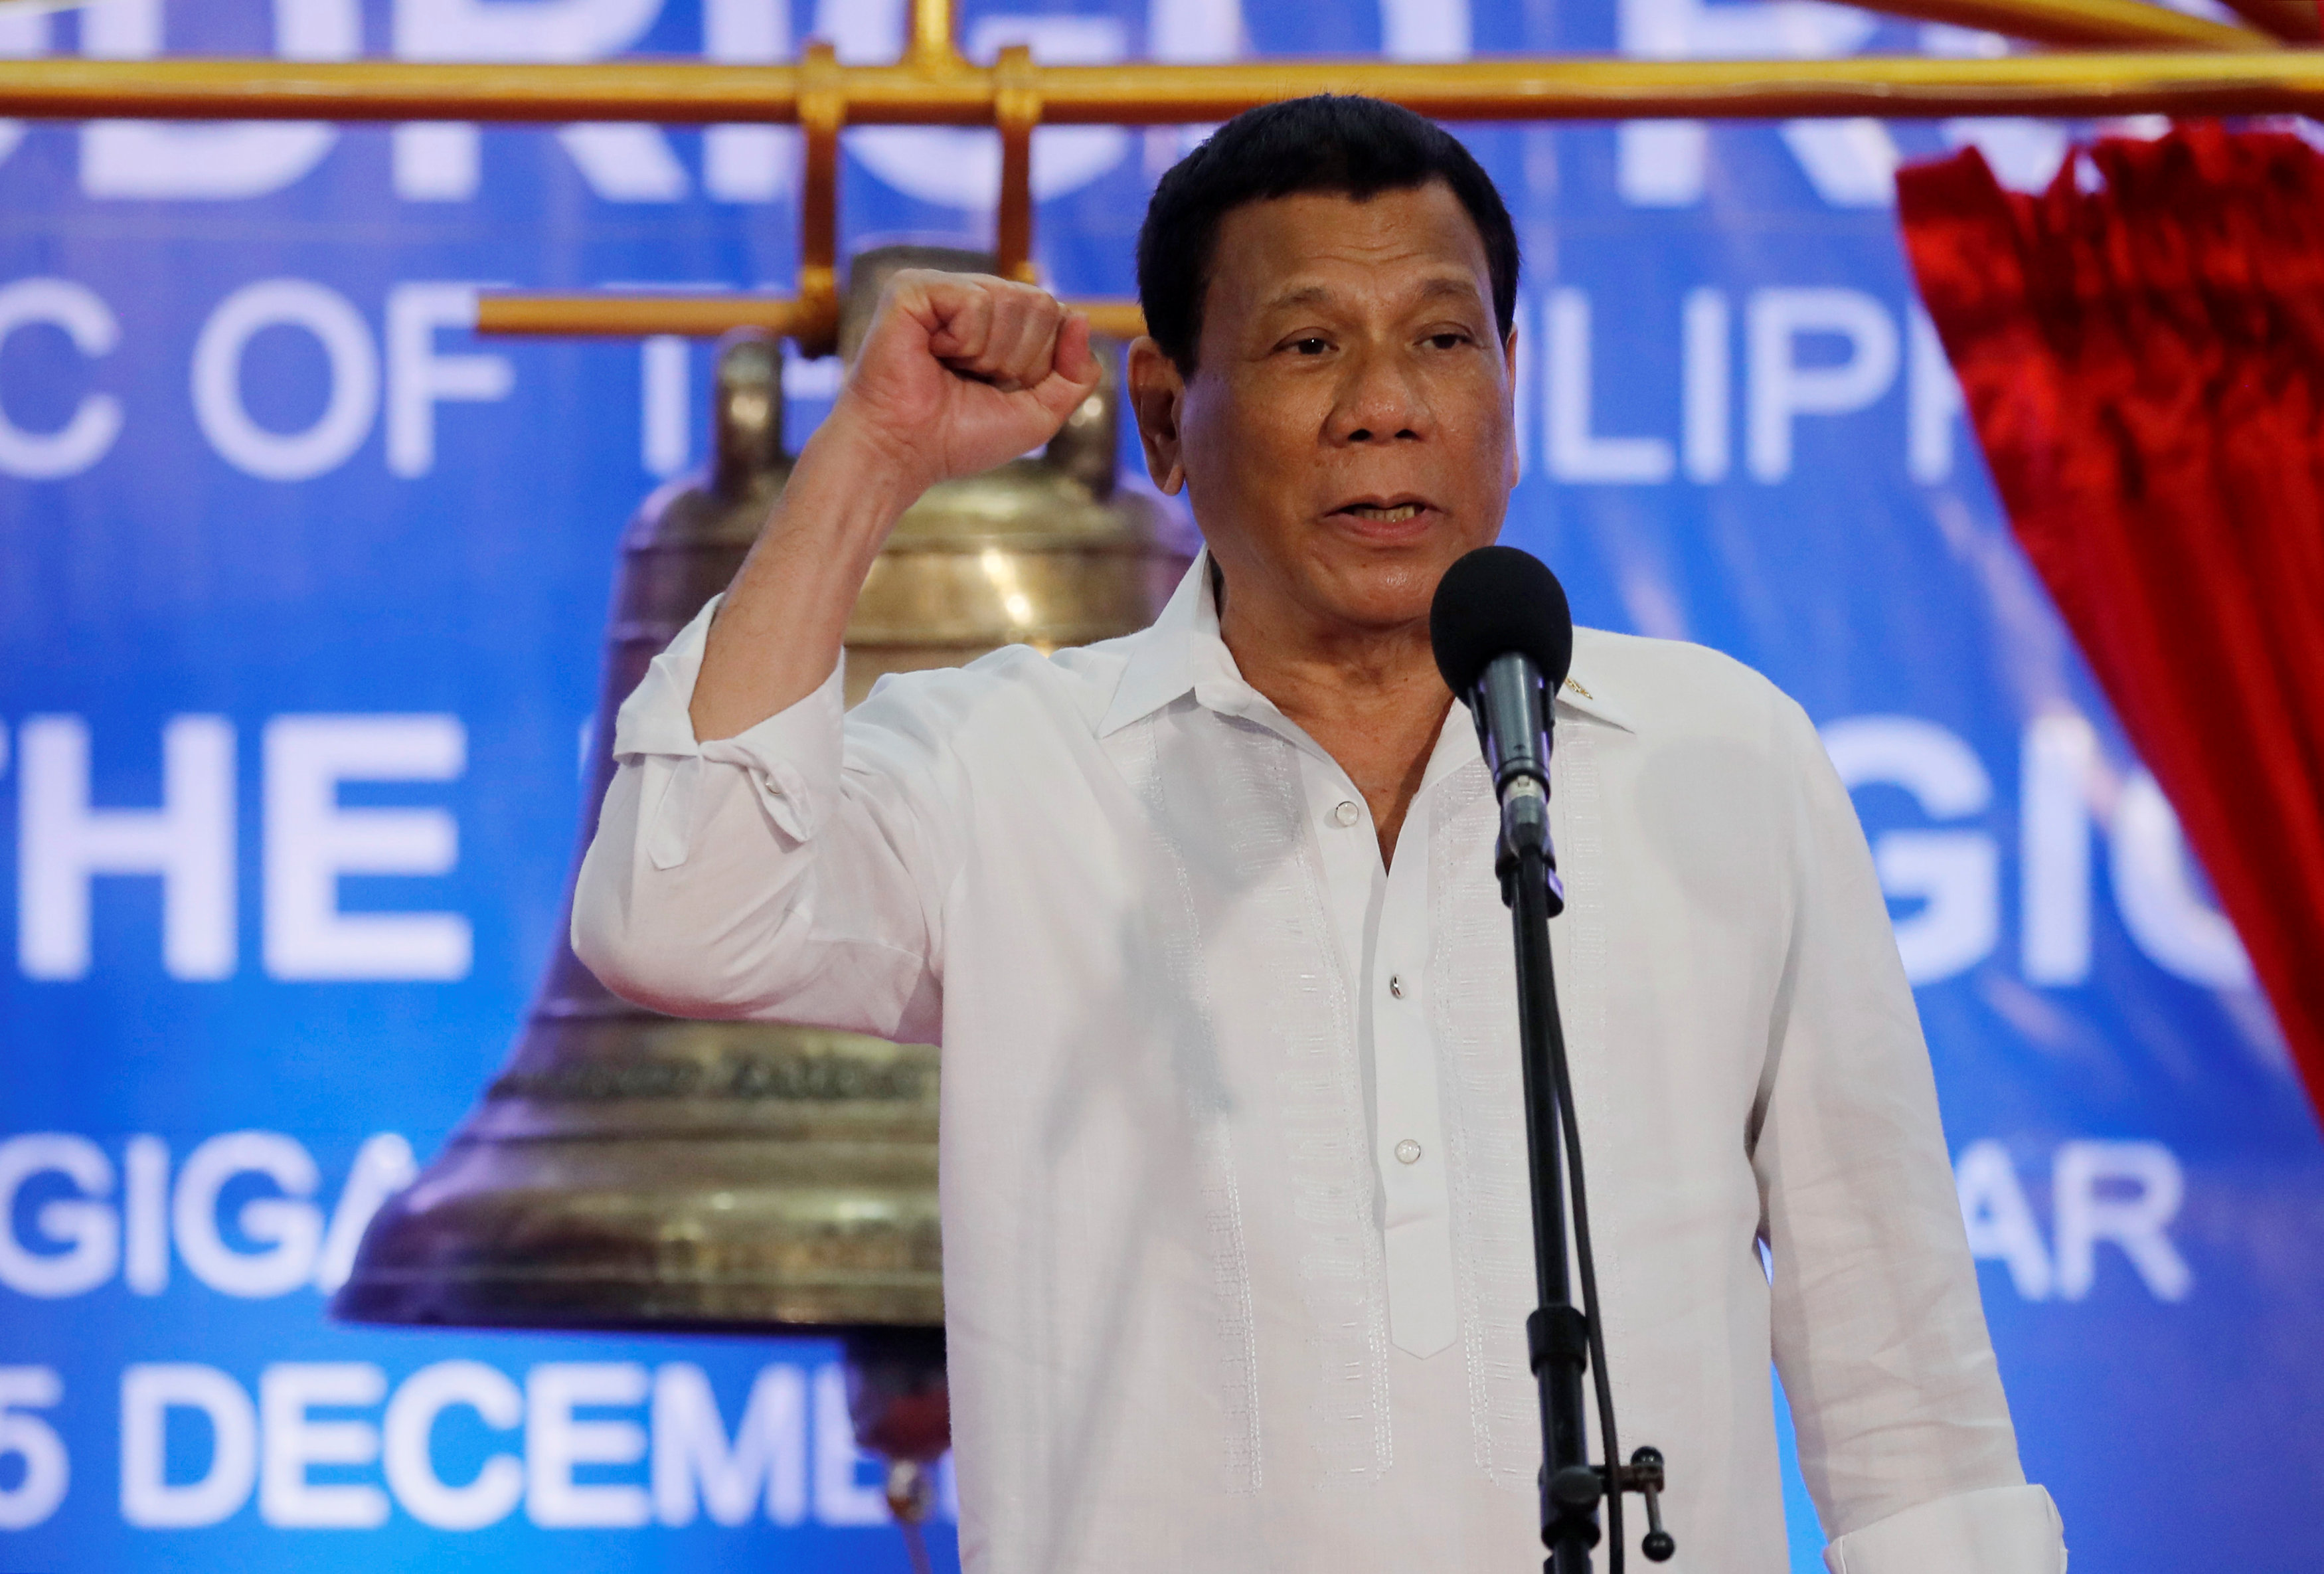 Filipino bishop tells Catholics to ignore Duterte's anti-church tirades